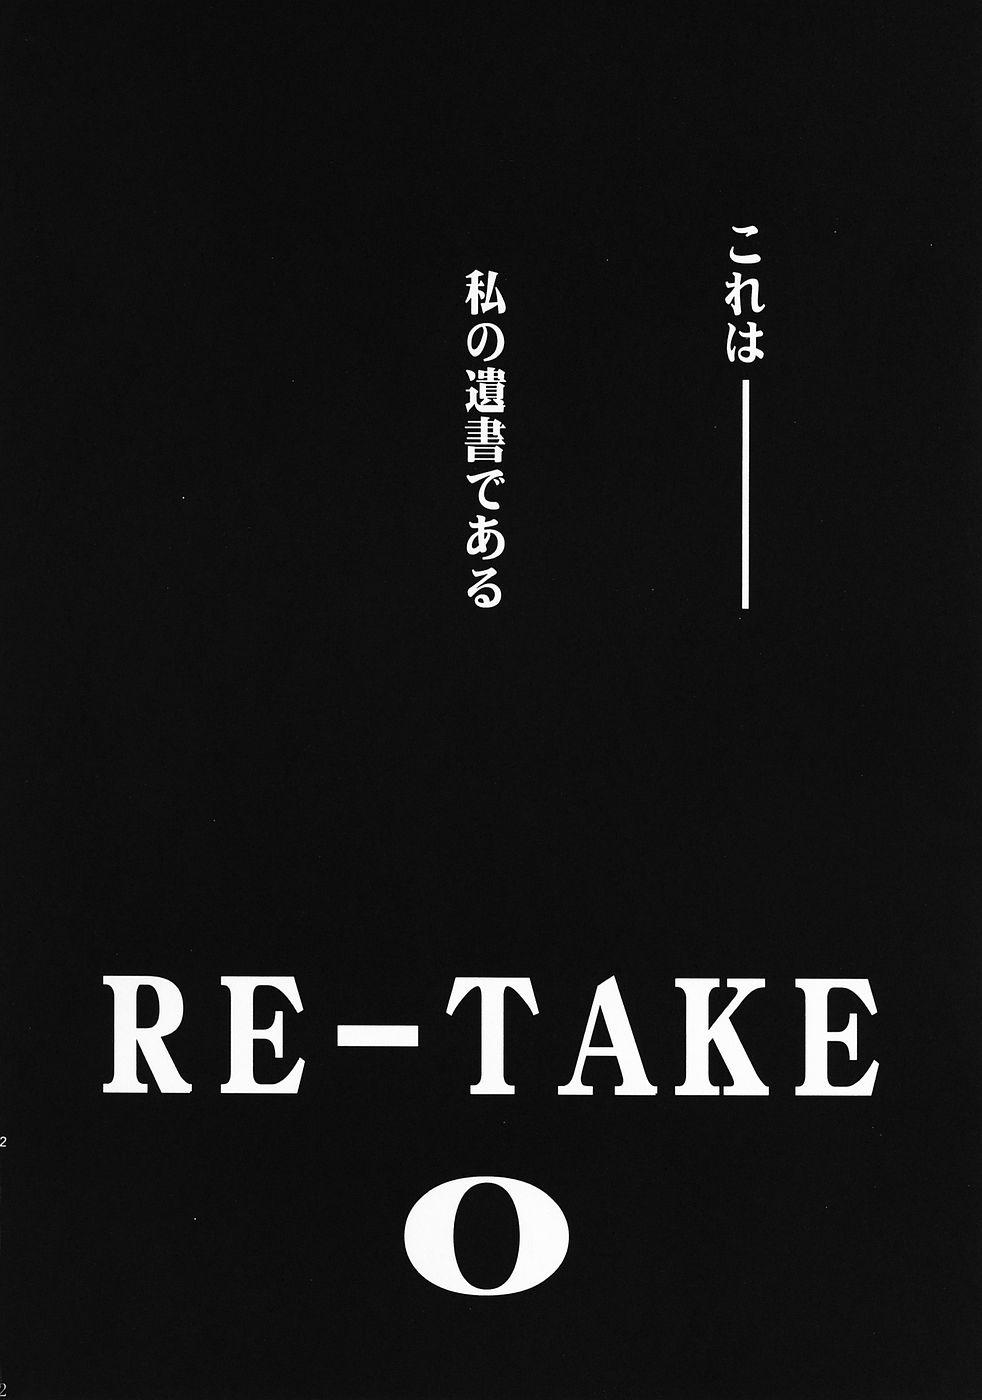 RE-TAKE 0 2